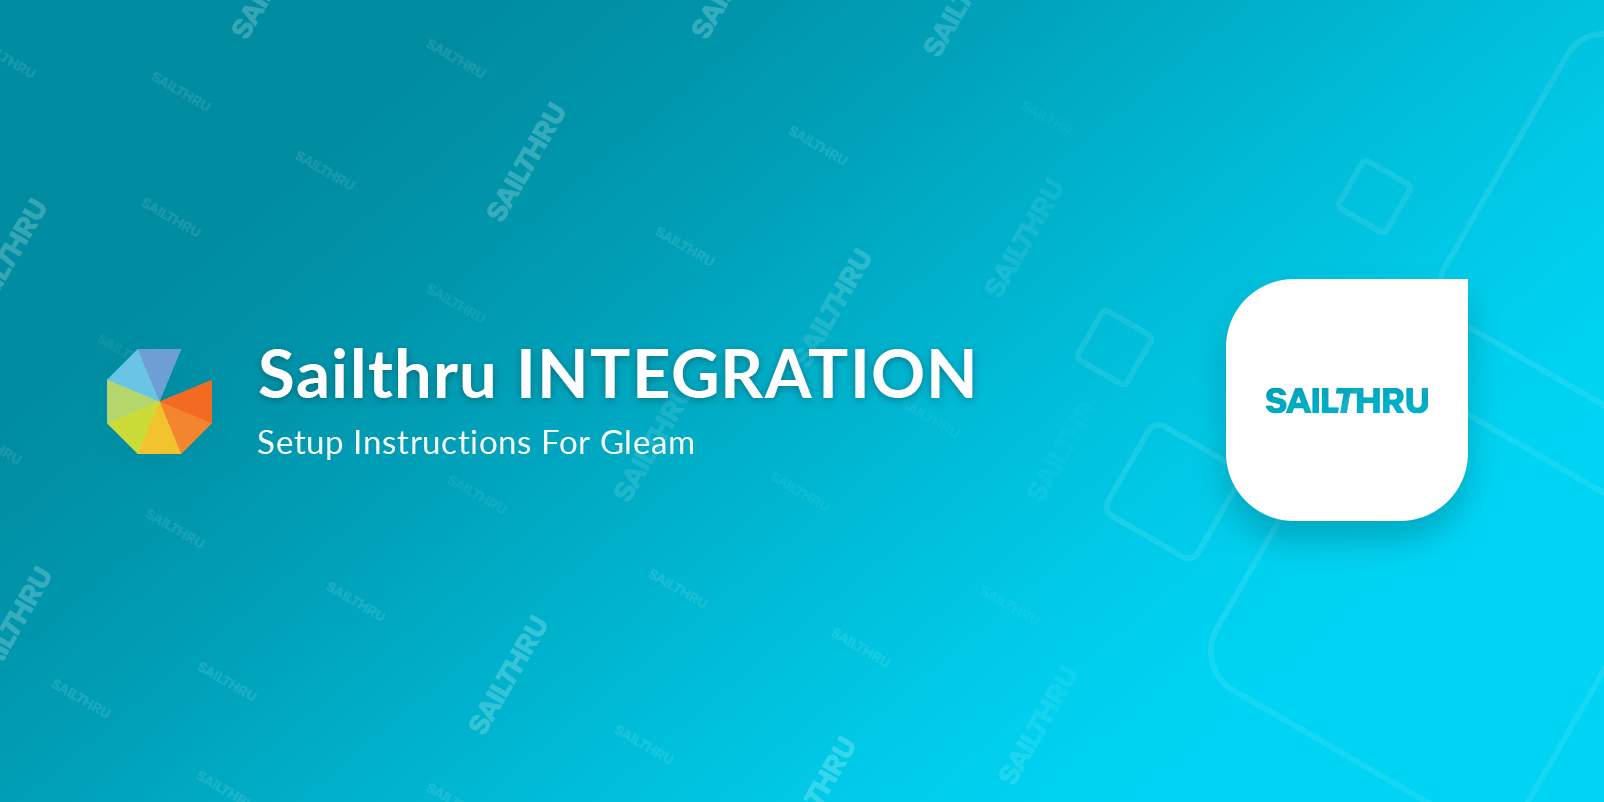 Sailthru integration setup instructions for Gleam